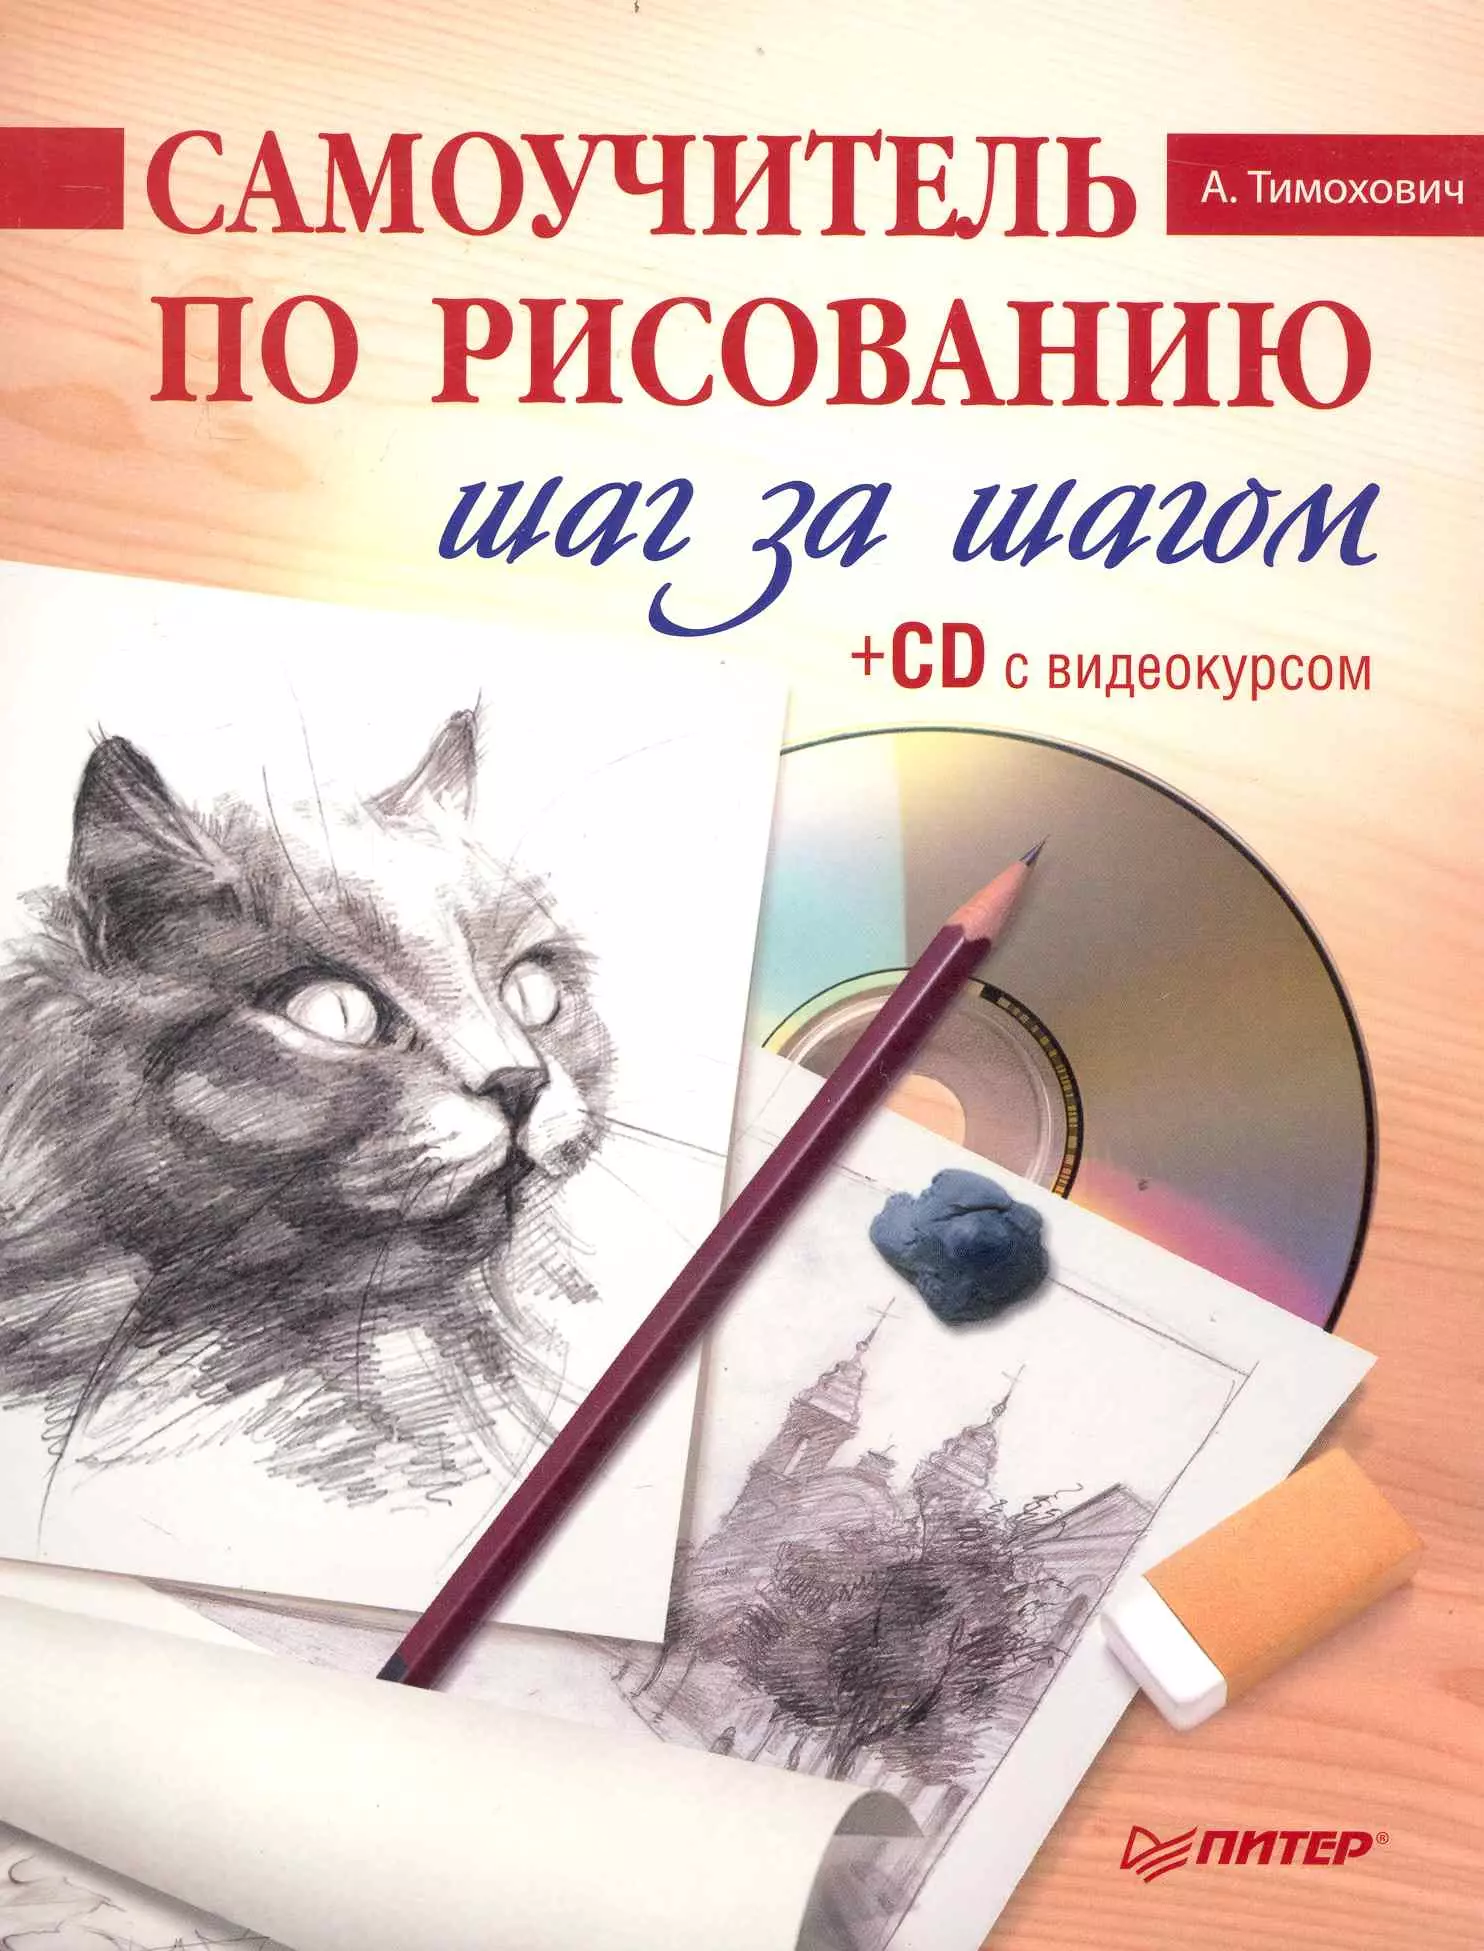 самоучитель по рисованию красками шаг за шагом cd с видеокурсом Самоучитель по рисованию. Шаг за шагом ( + CD с видеокурсом).